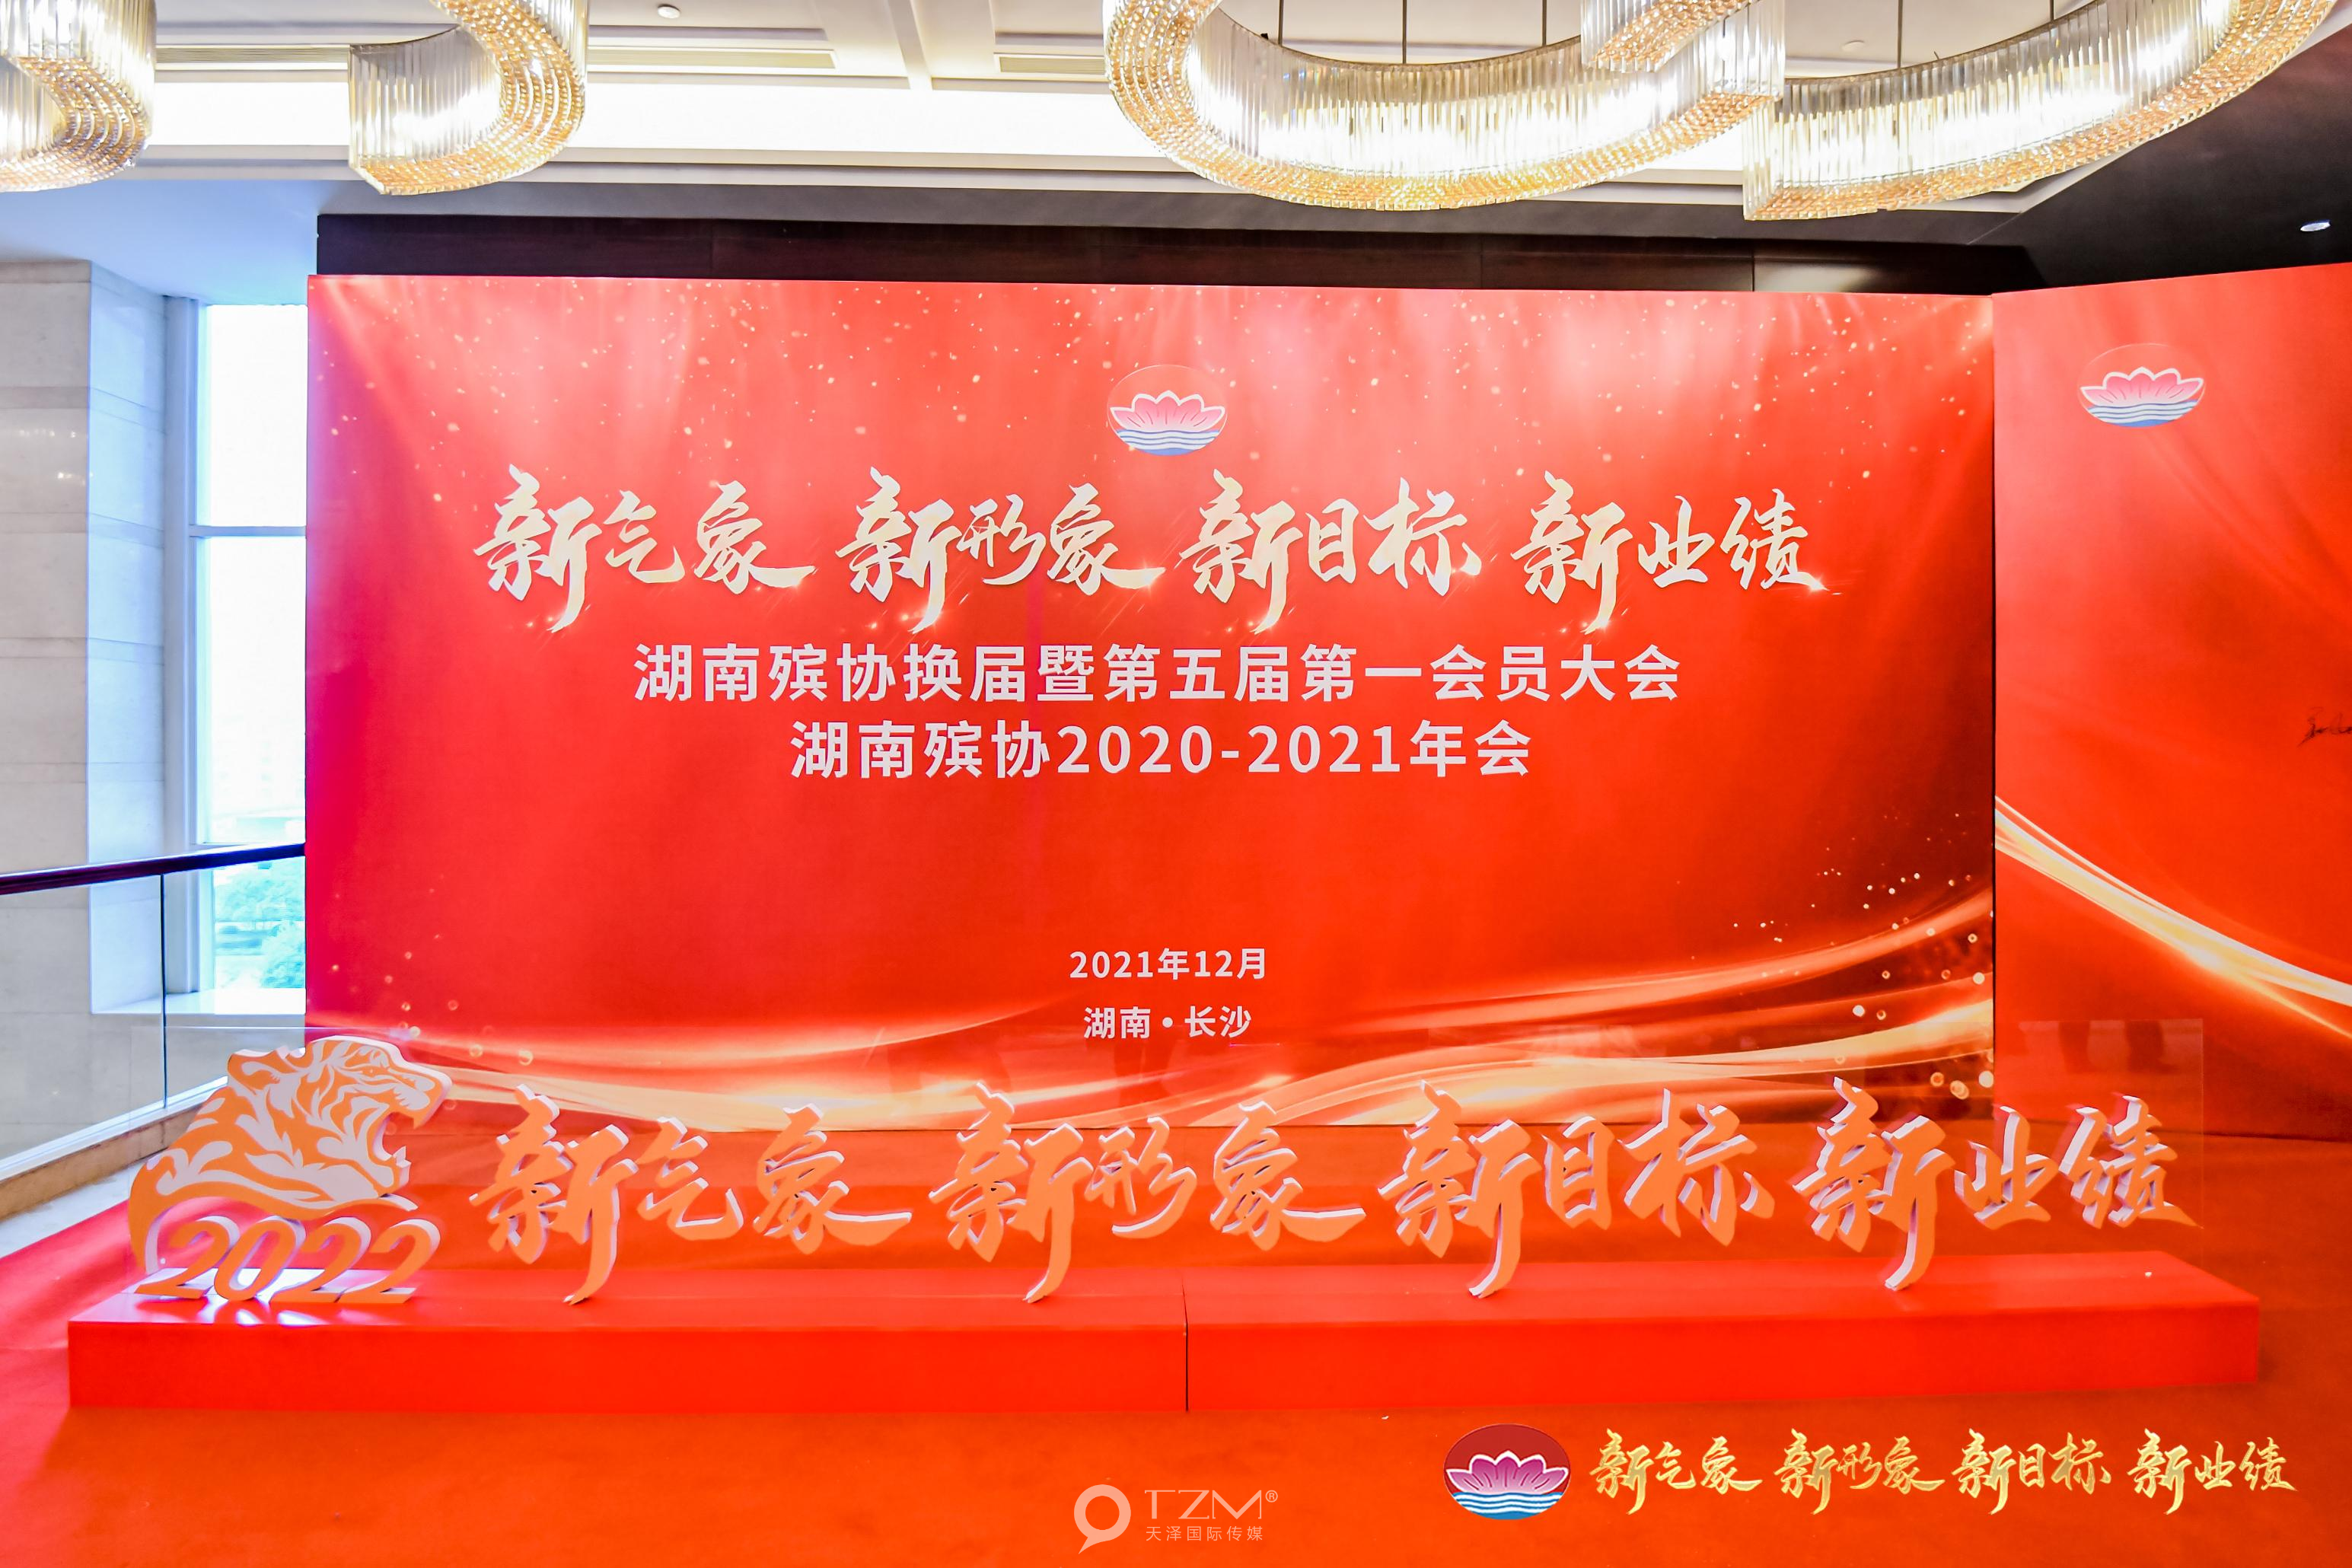 天泽传媒策划执行 湖南殡葬协会2021年年会活动